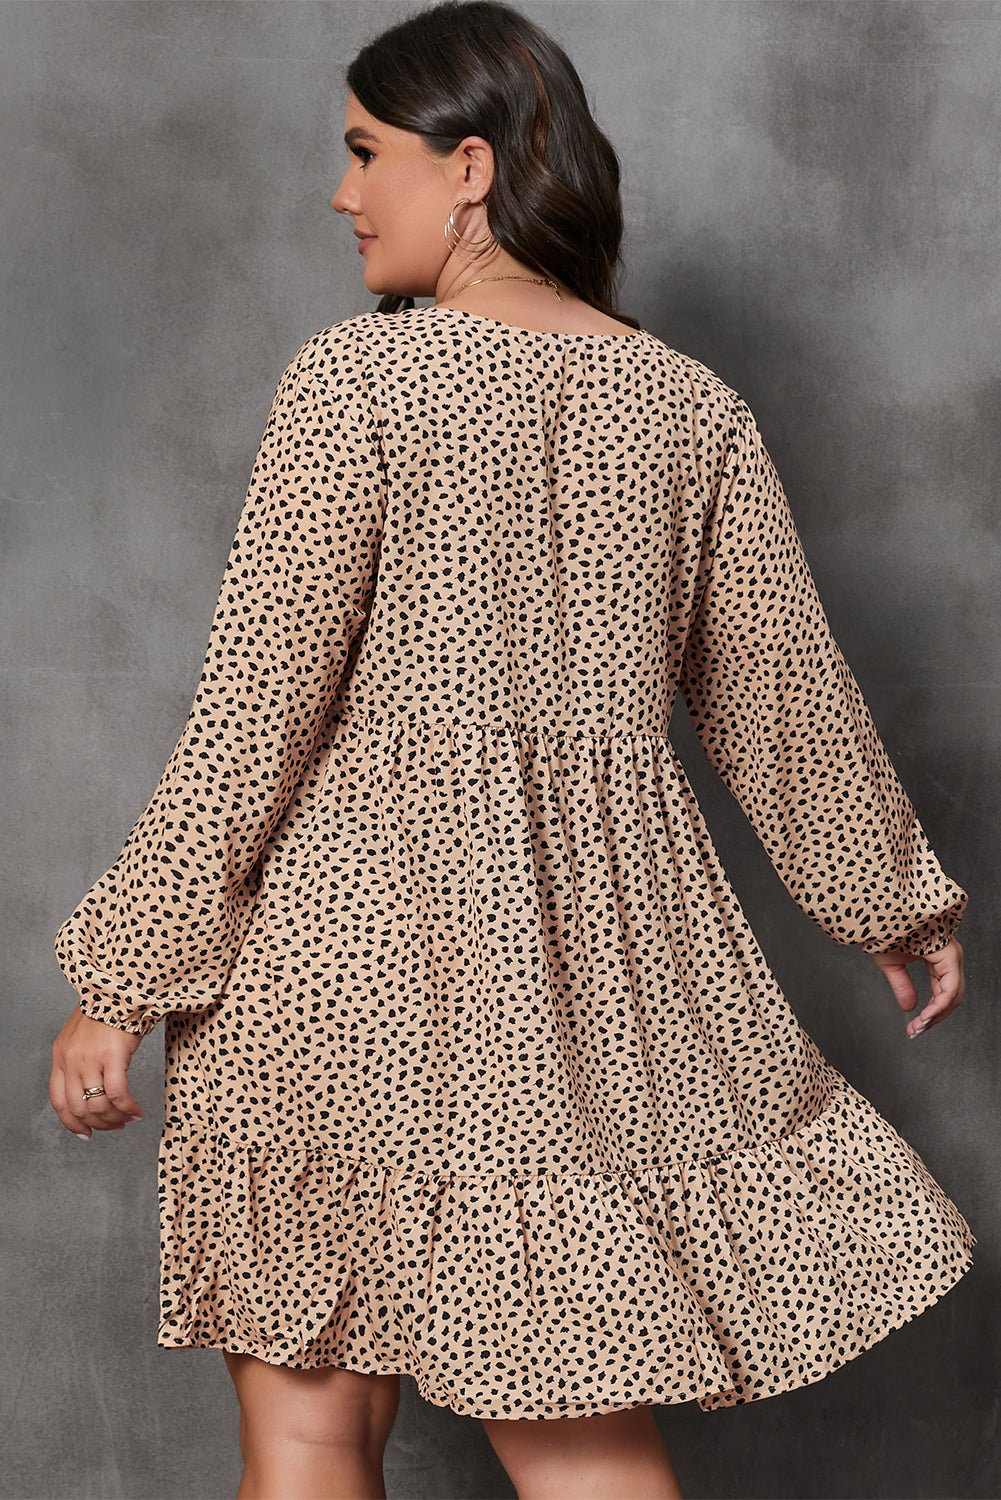 Smeđa haljina dugih rukava veće veličine s printom leoparda na više razina